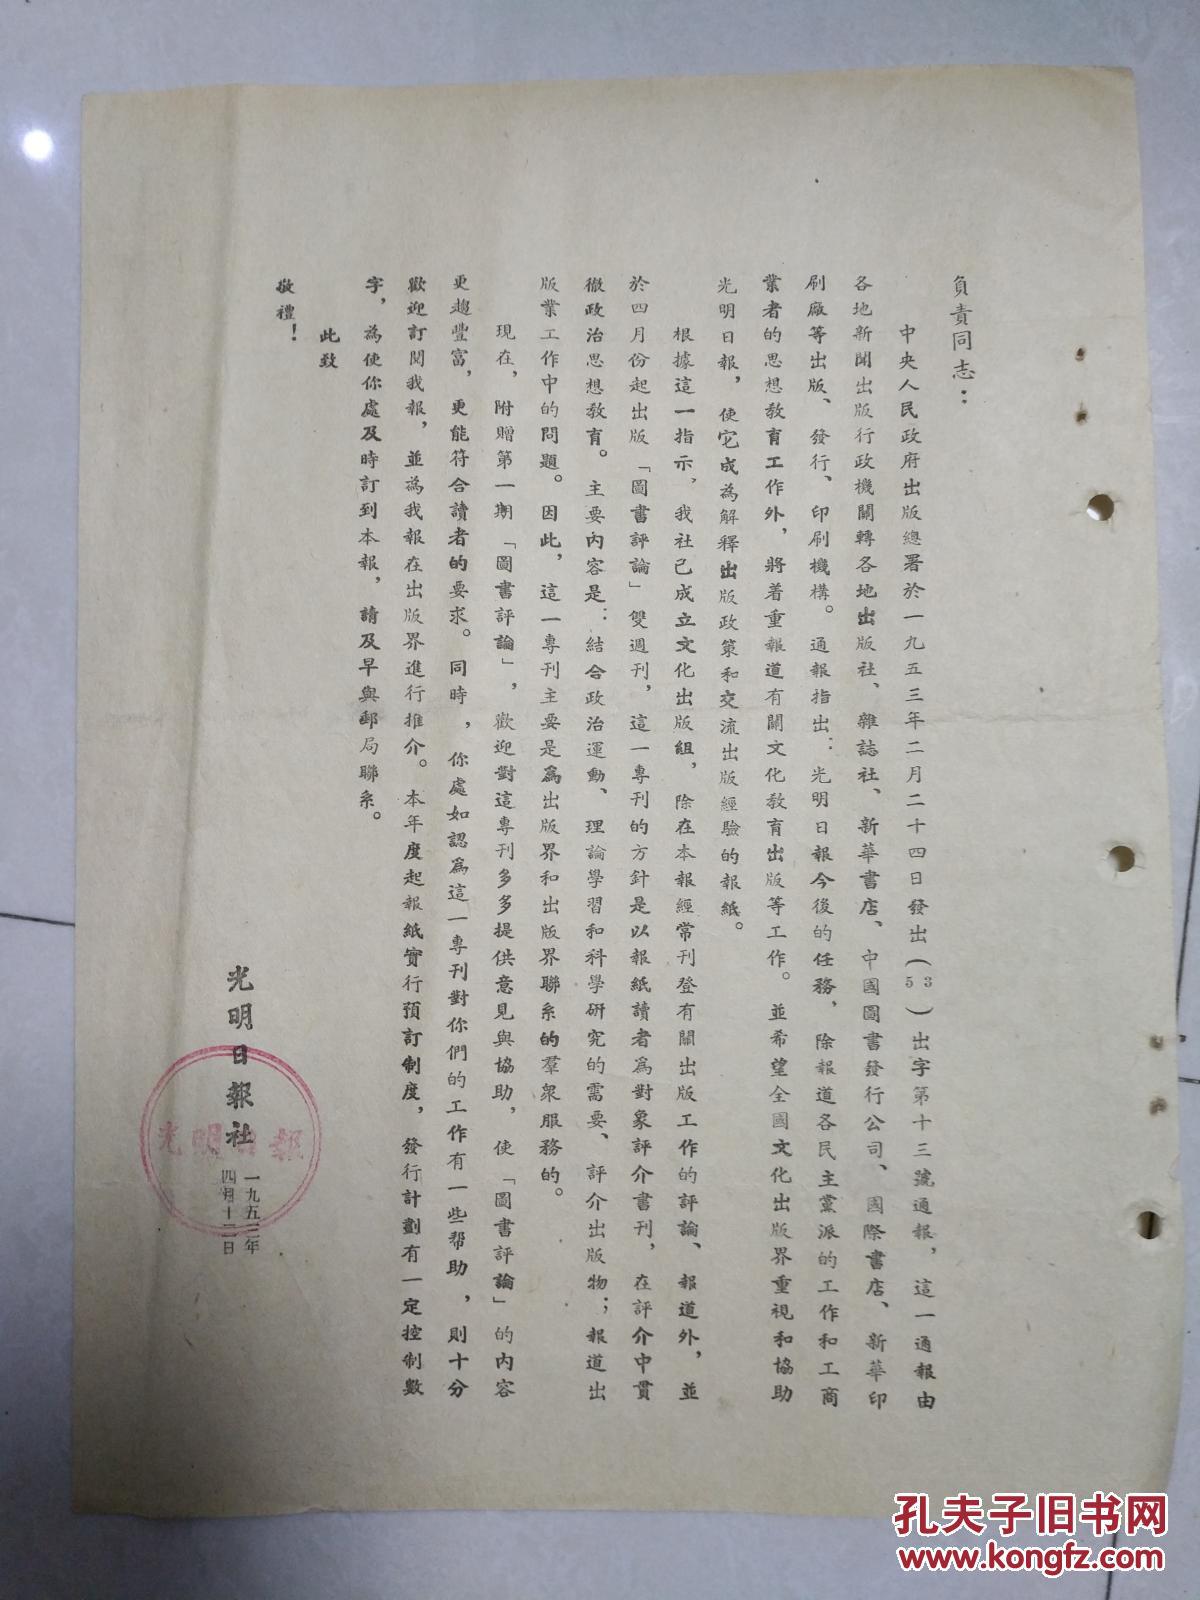 光明日报社 中央人民政府出版总署于一九五三年二月二发出(53)出字第十三号通报 1份  年代.